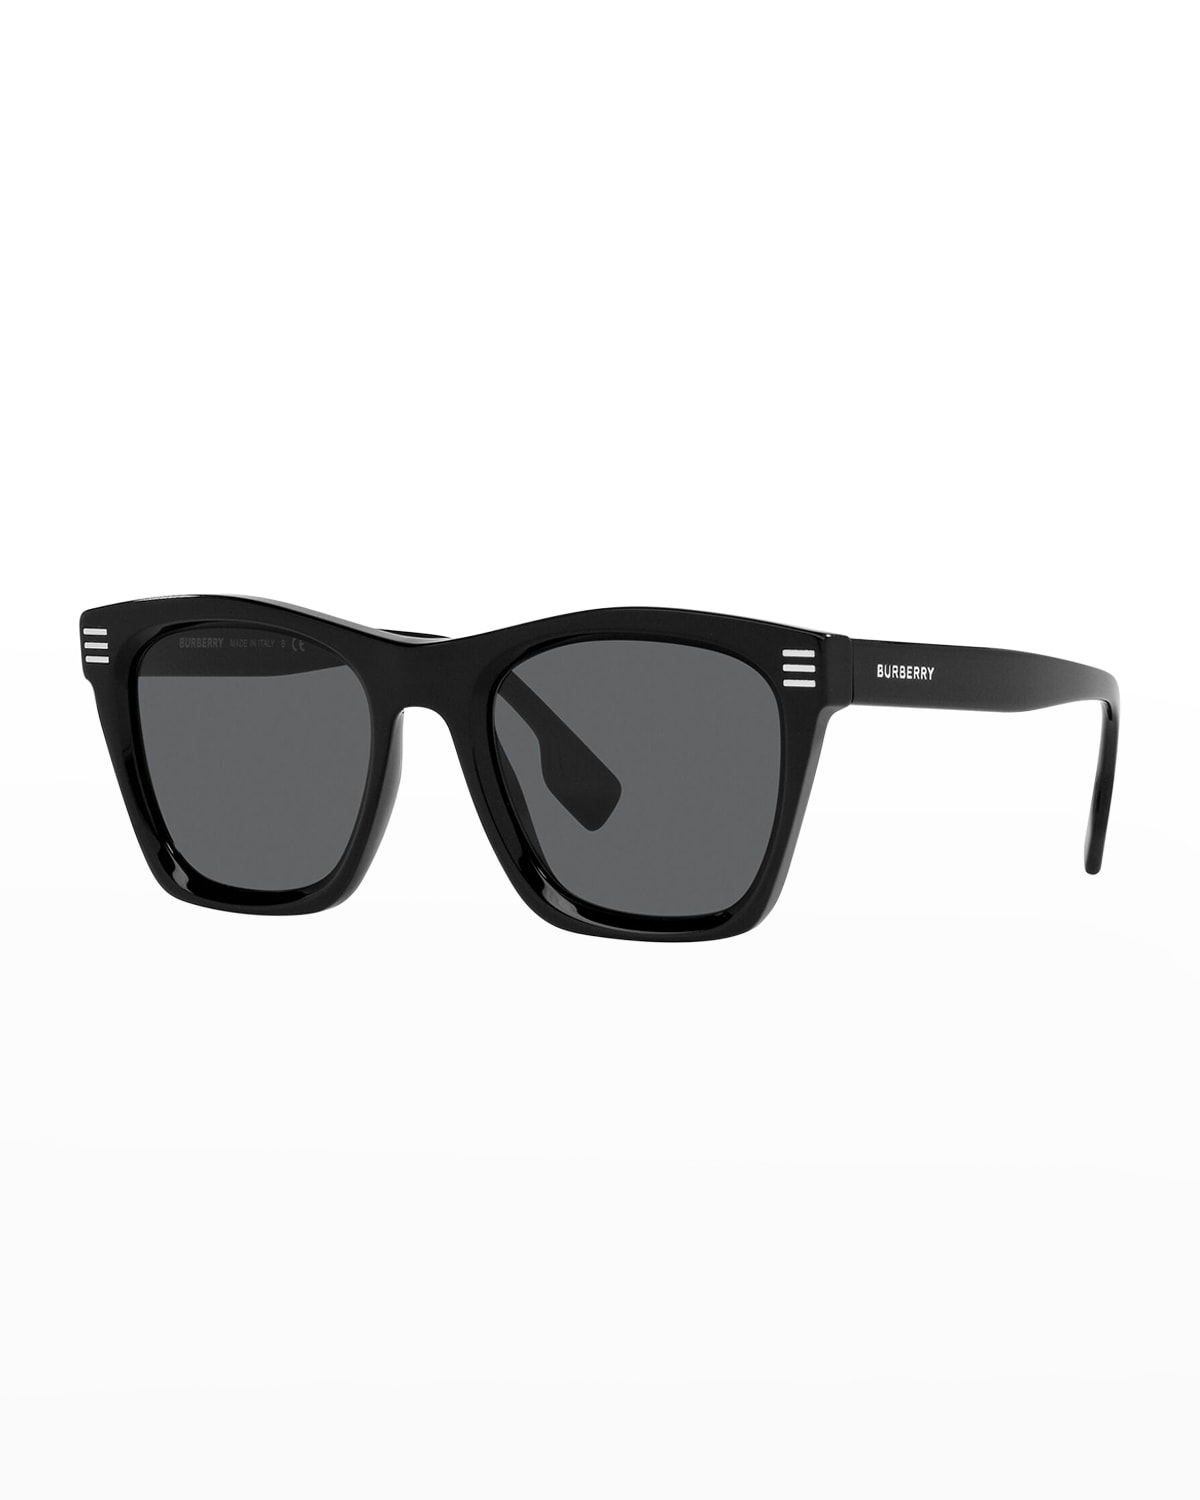 Men's Square Acetate Sunglasses